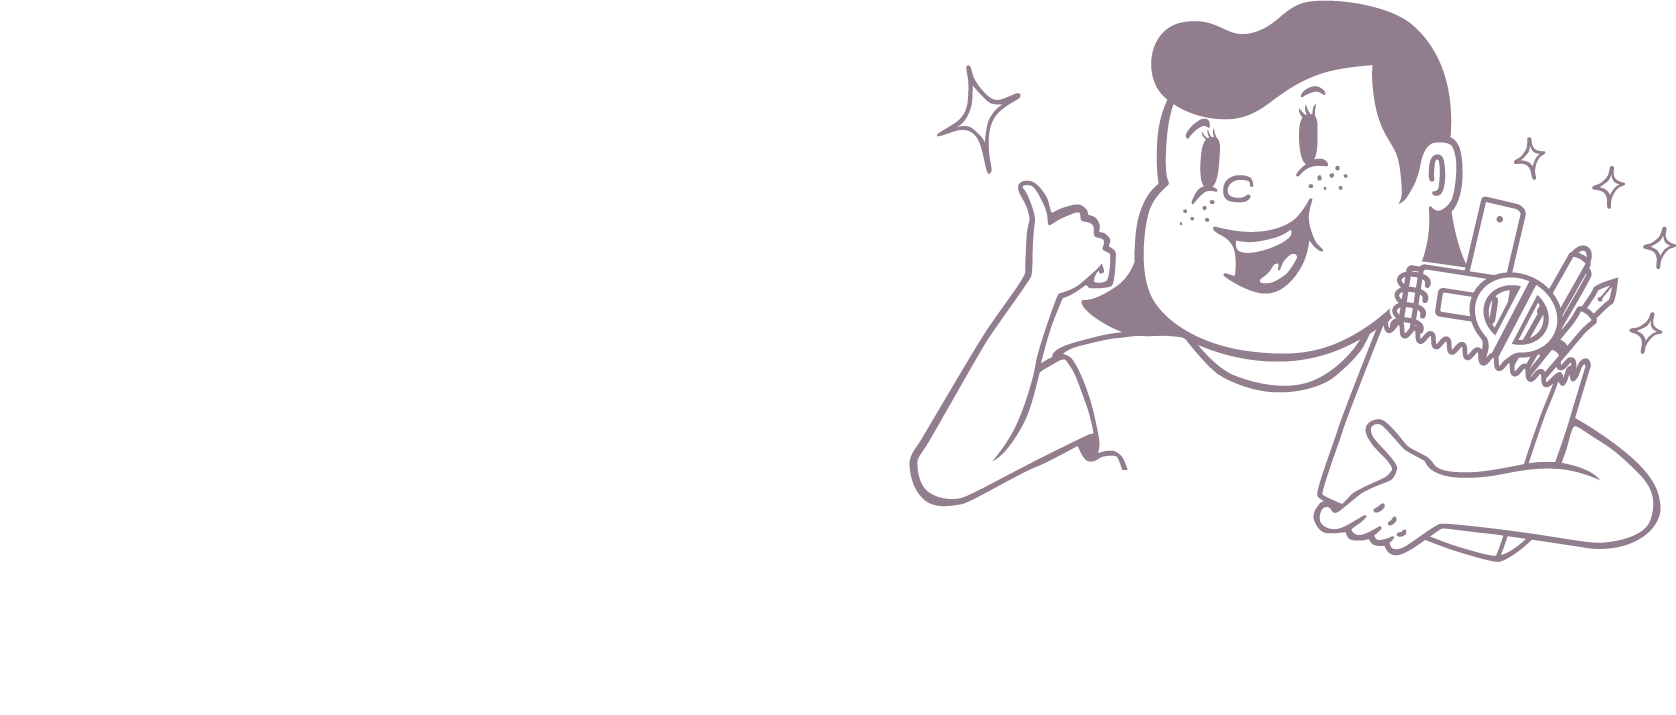 Choki Choki Stationery